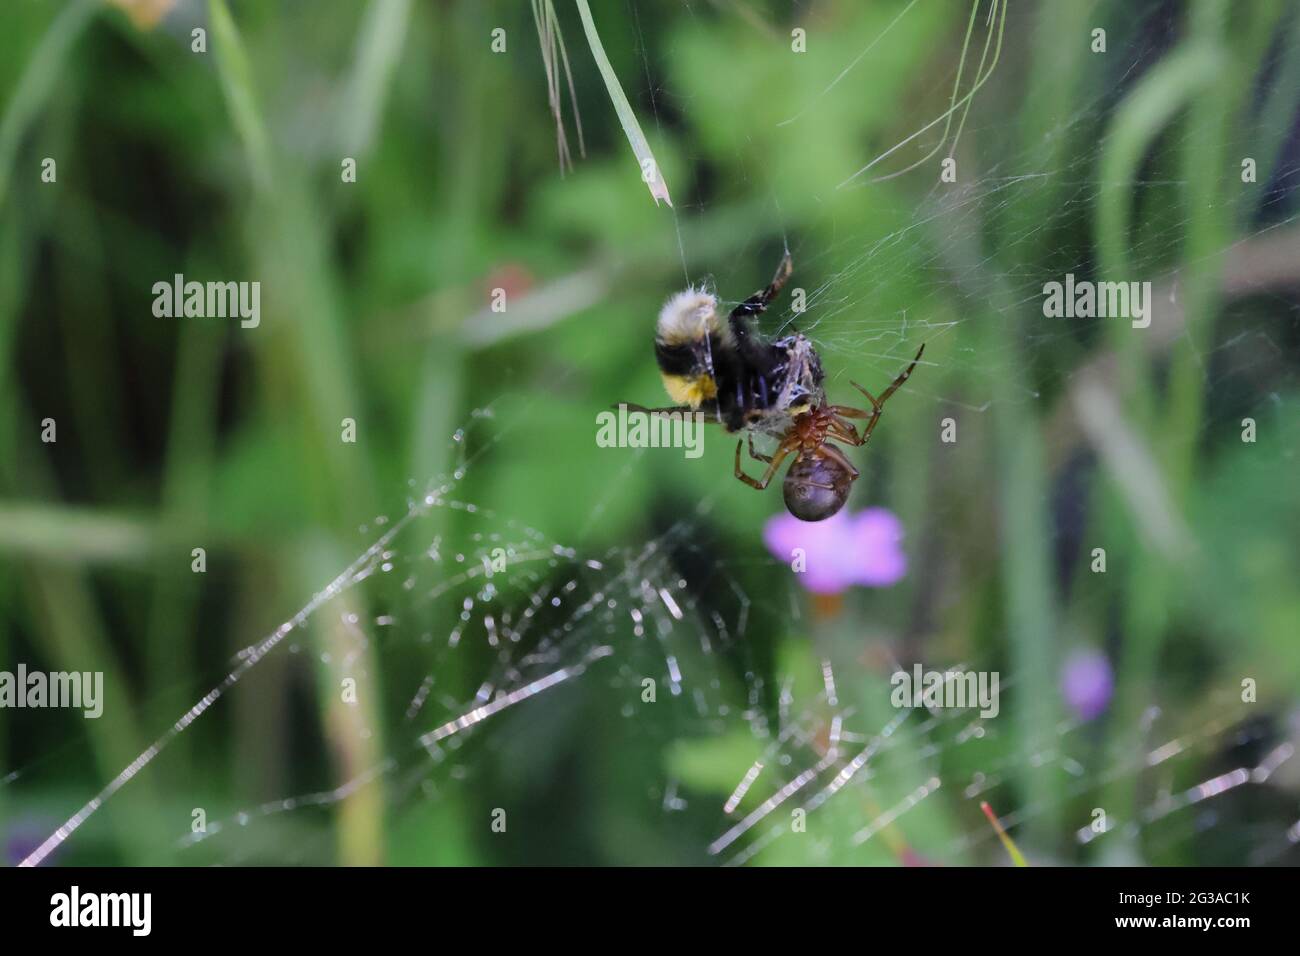 Eine Hummel, die herumfliegt und Pollen sammelt, wird in einem Spinnennetz gefangen. Die Spinne wird gesehen, wie sie die Biene in ihr Netz für die Vorratskammer der Spinne einwickelt Stockfoto